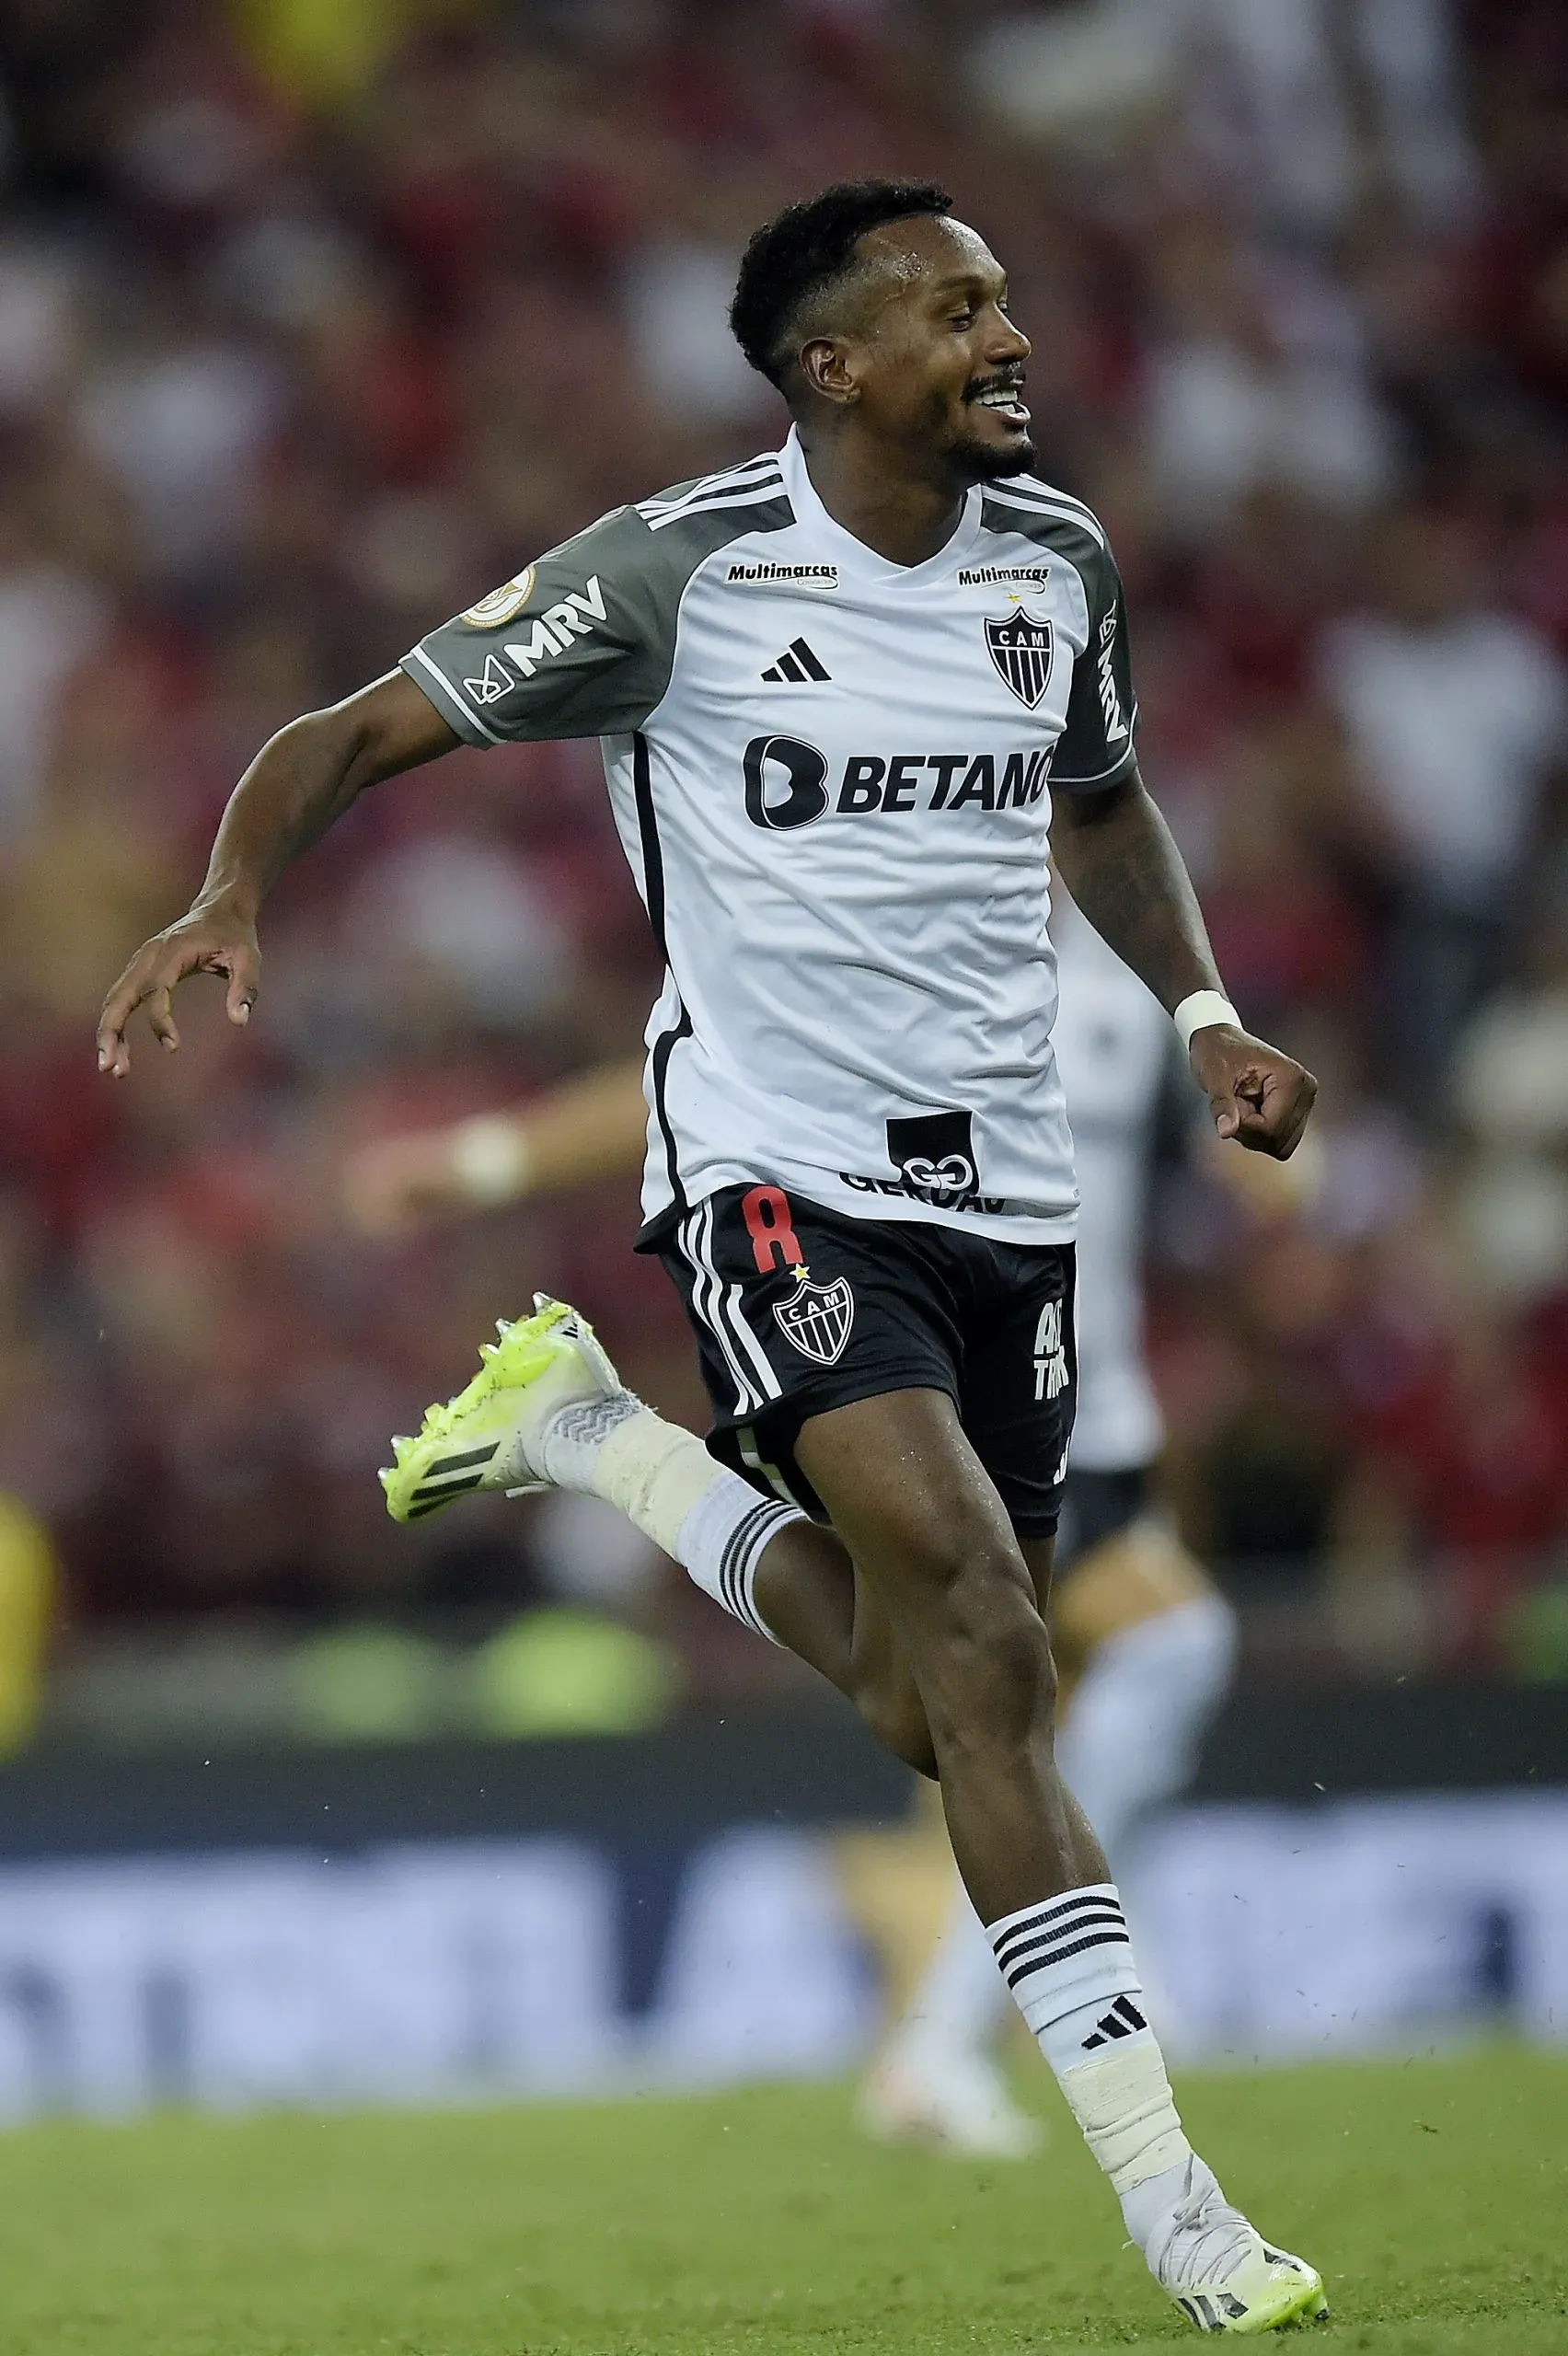 Edenílson atuando pelo seu último clube no Campeonato Brasileiro, o Atlético-MG. Foto: Alexandre Loureiro/AGIF